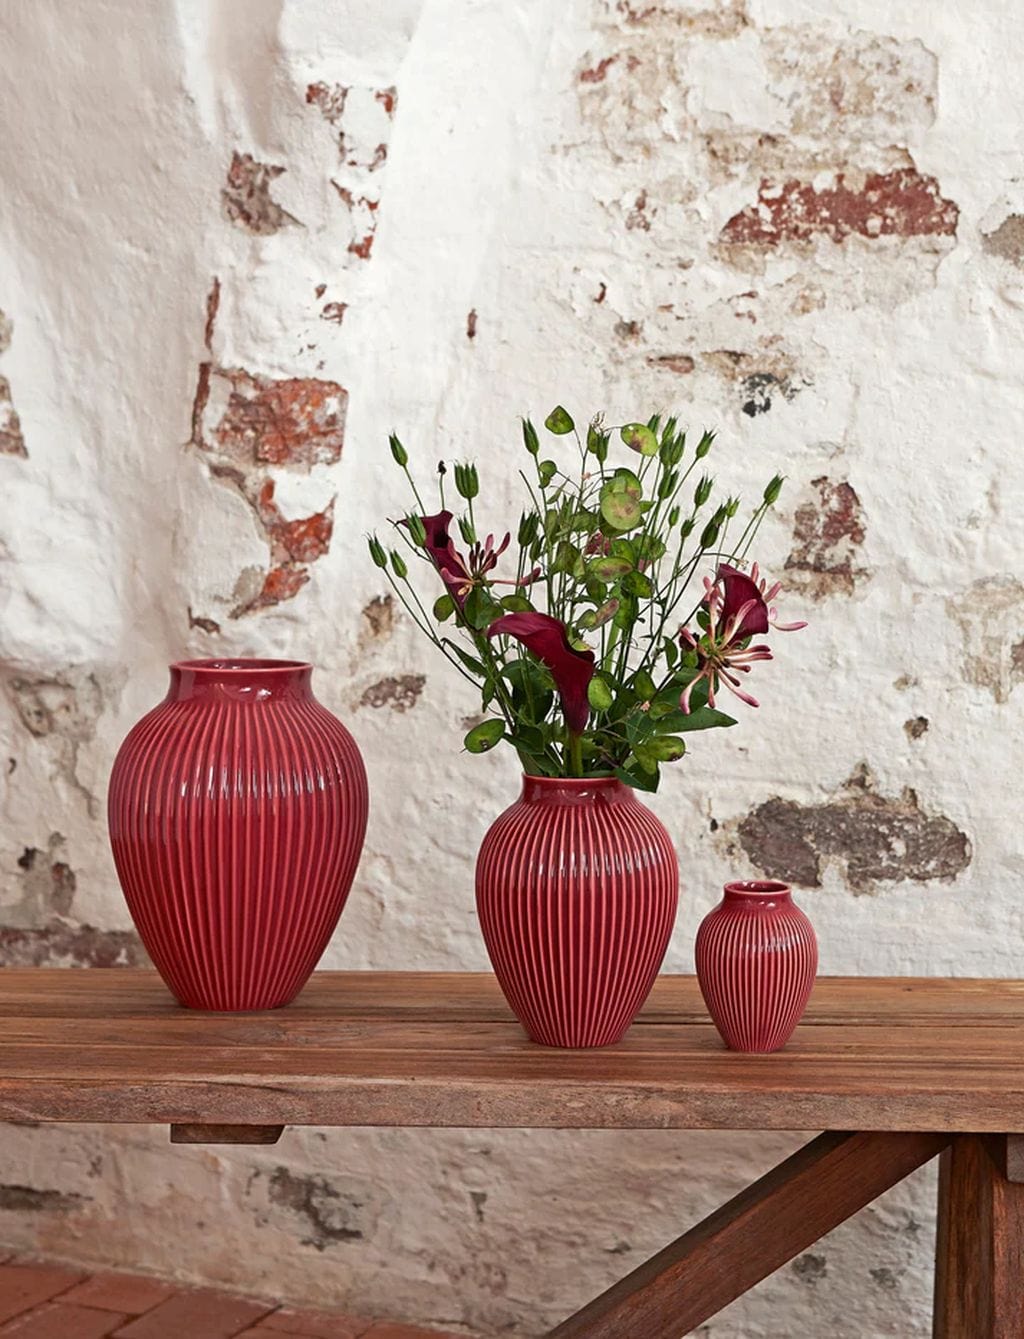 Knabstrup Keramik Vase med Riller H 12,5 cm, Bordeaux